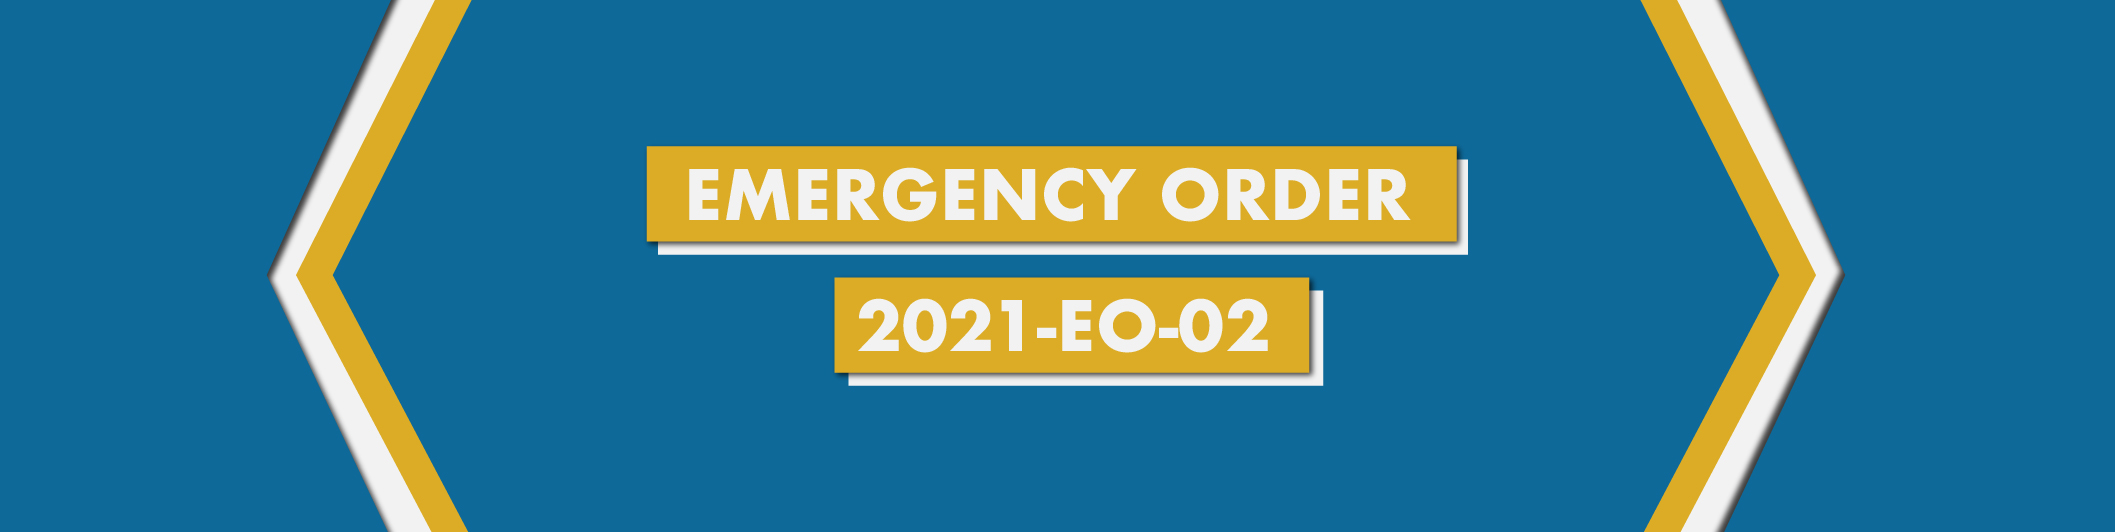 Emergency Order (EO) 2021-EO-02